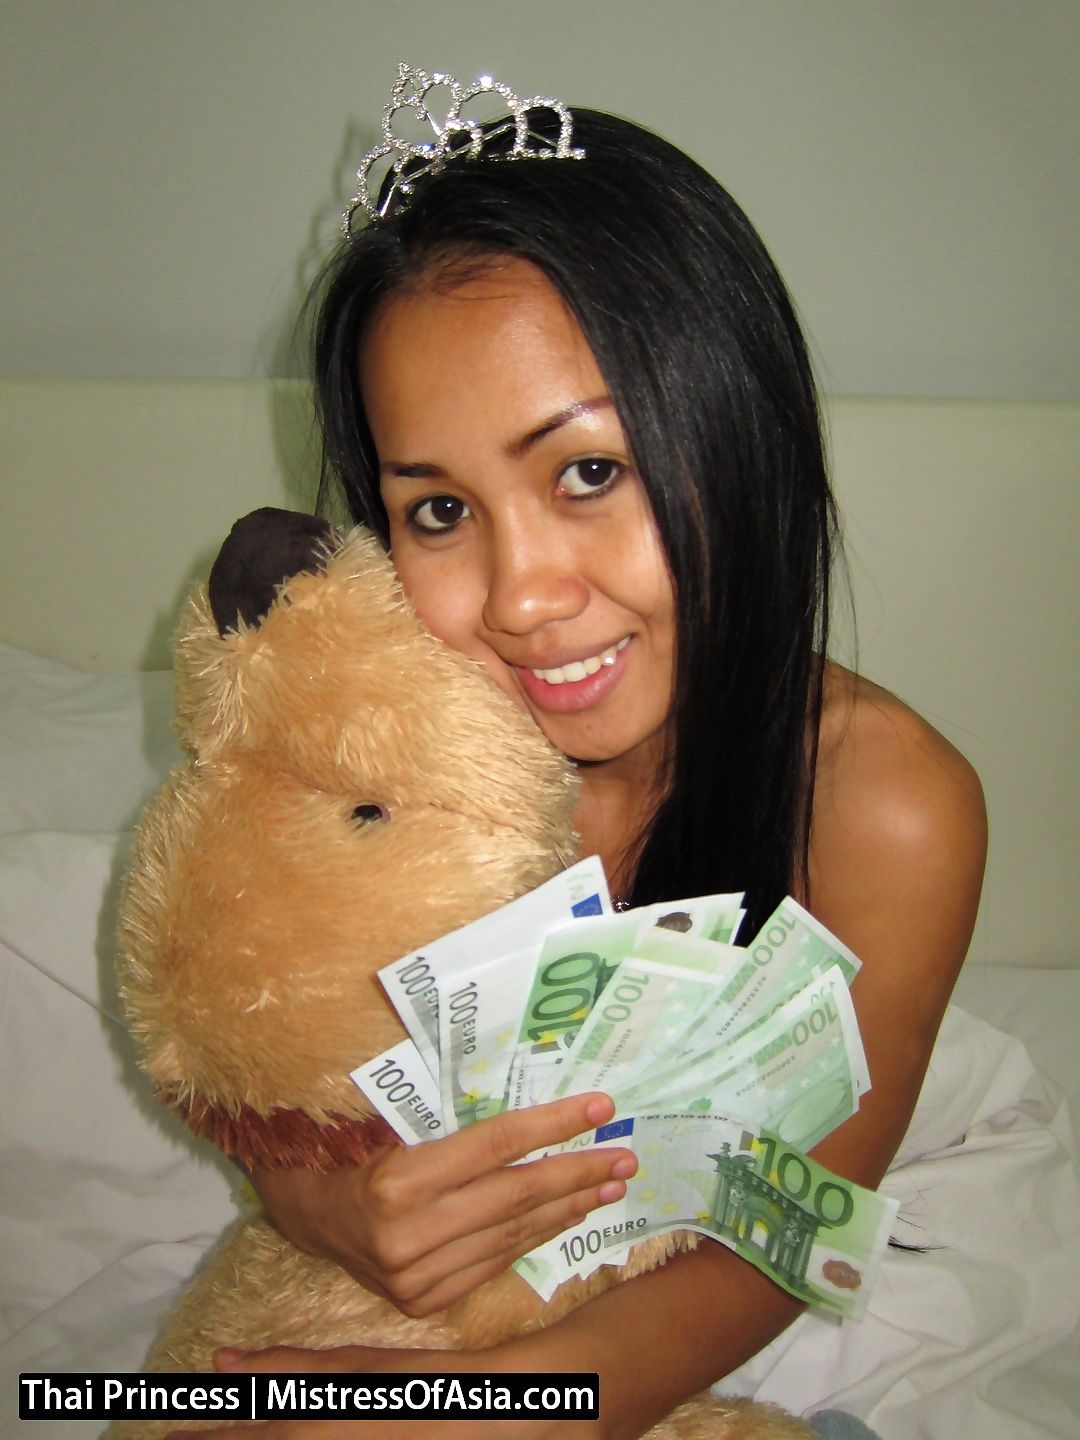 Thai princess dominates weak men for cash - part 1460 page 1